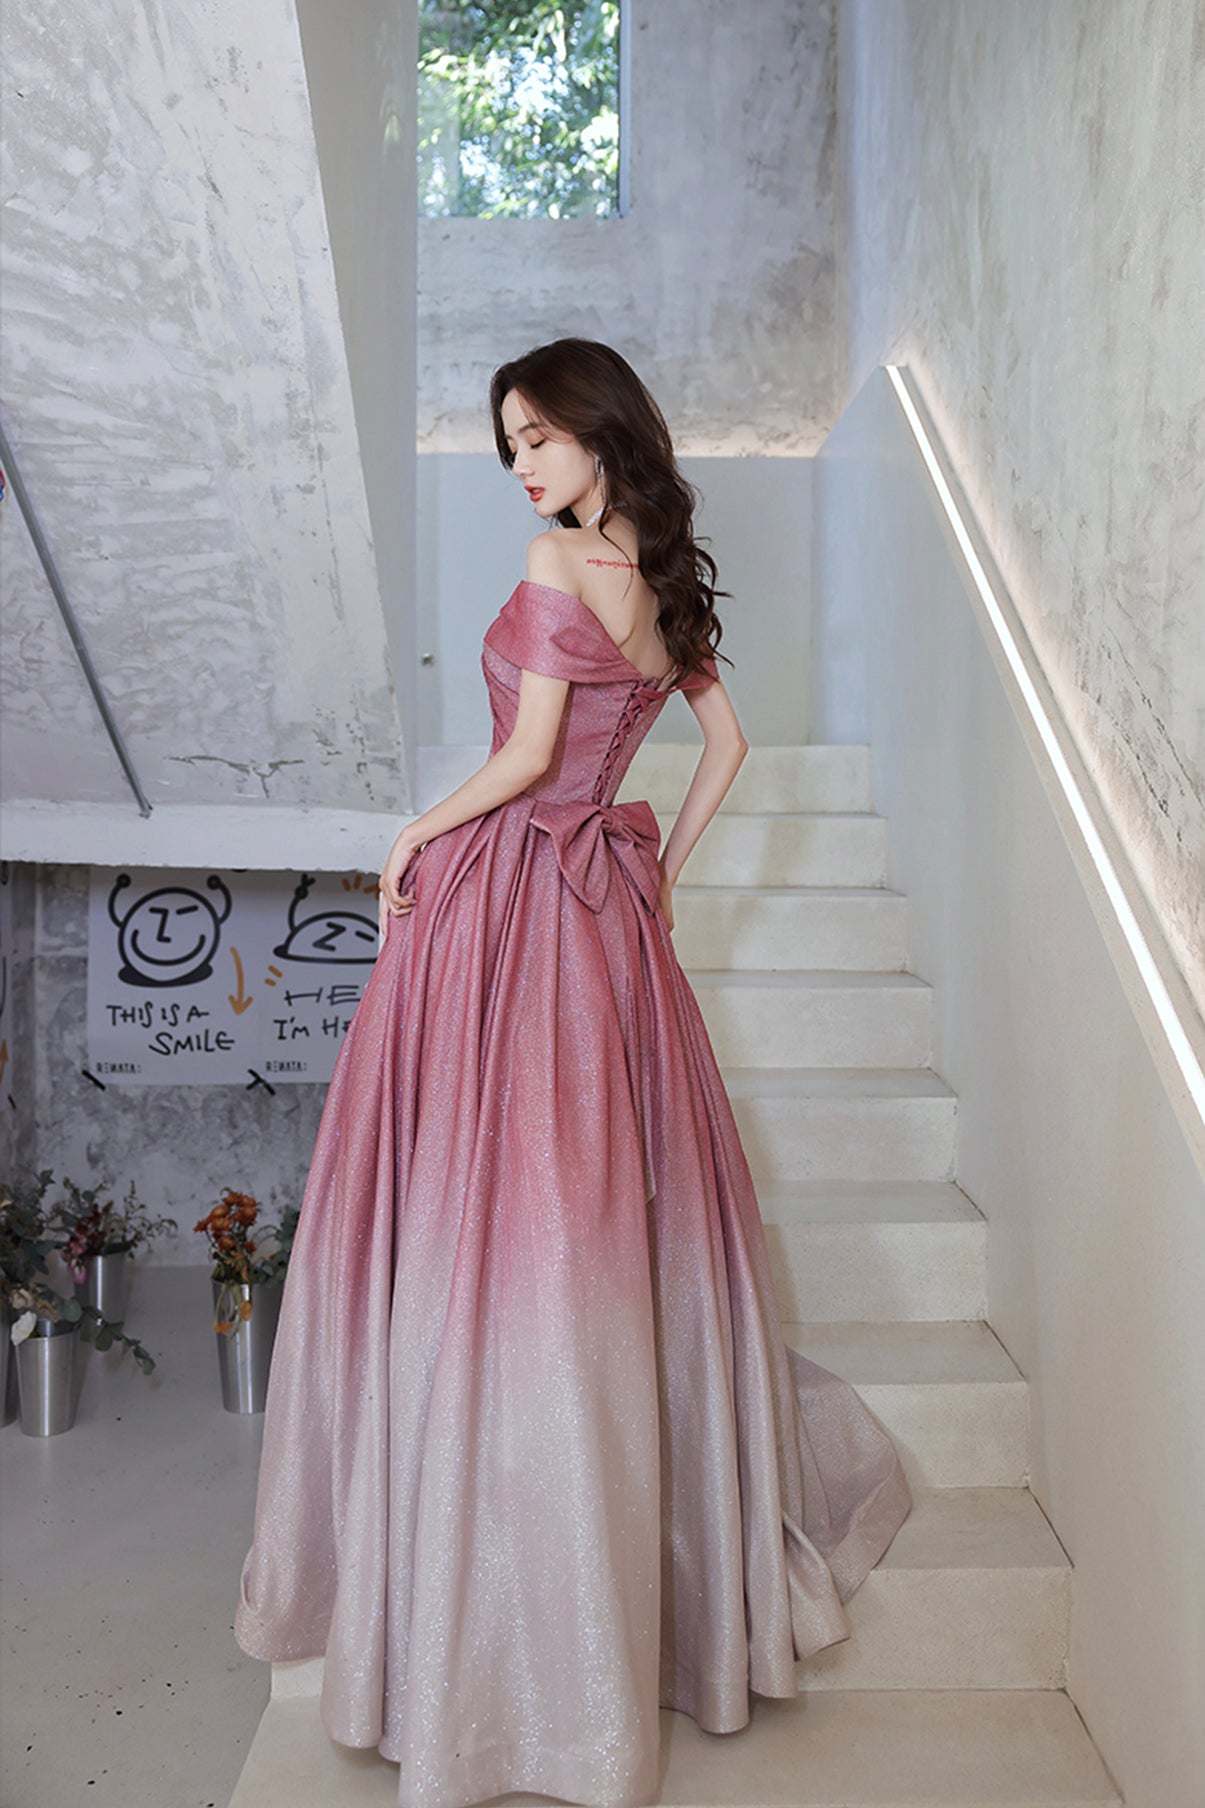 Pink gradient long A line prom dress pink evening dress  8742